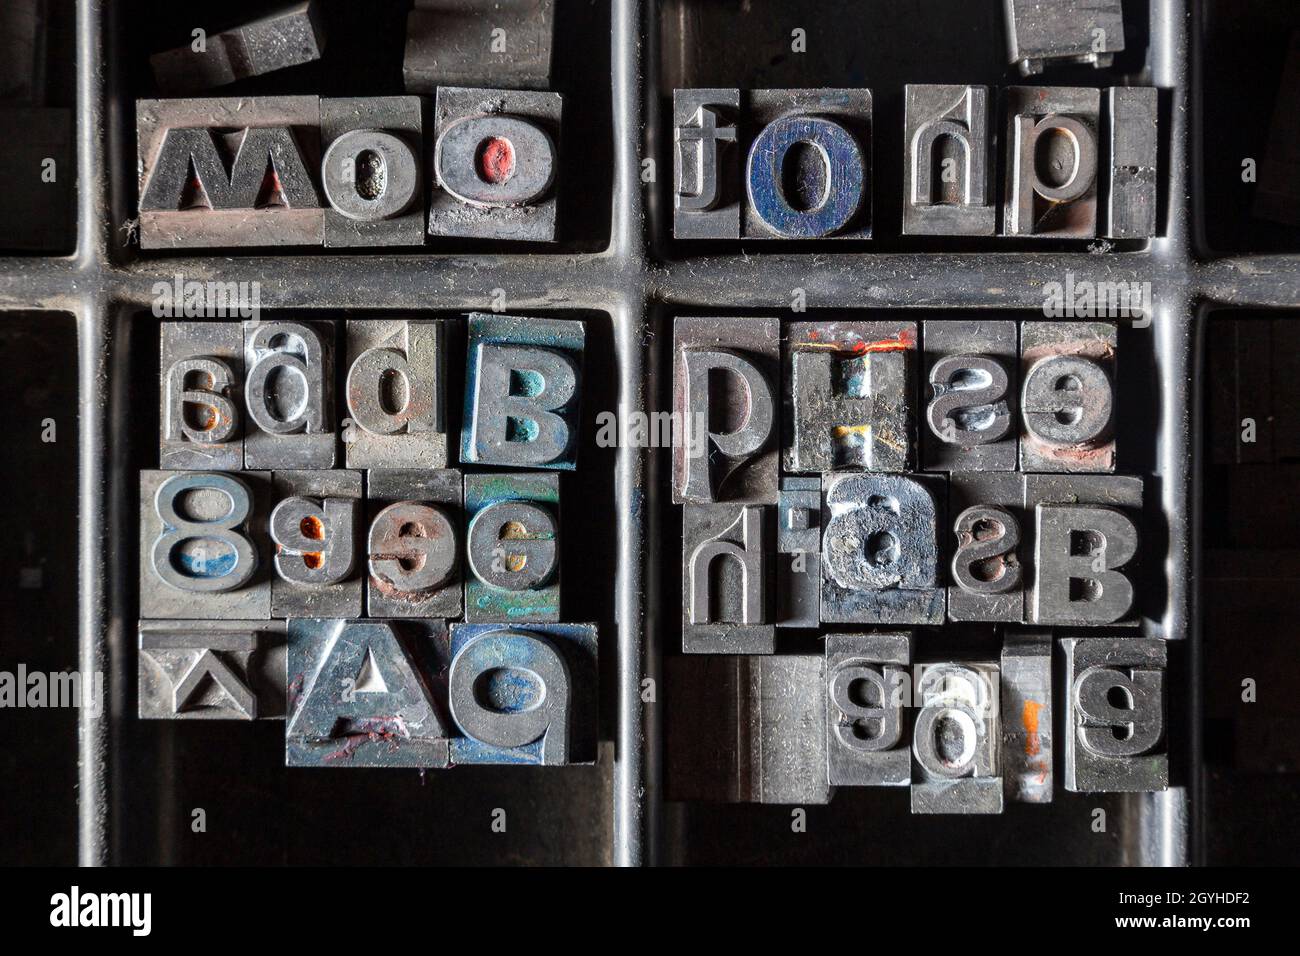 Impresión de tipografía, impresión de tipografía, letras individuales dispuestas para formar palabras. El tipo de metal era ideal para la impresión comercial, una impresión tradicional Foto de stock